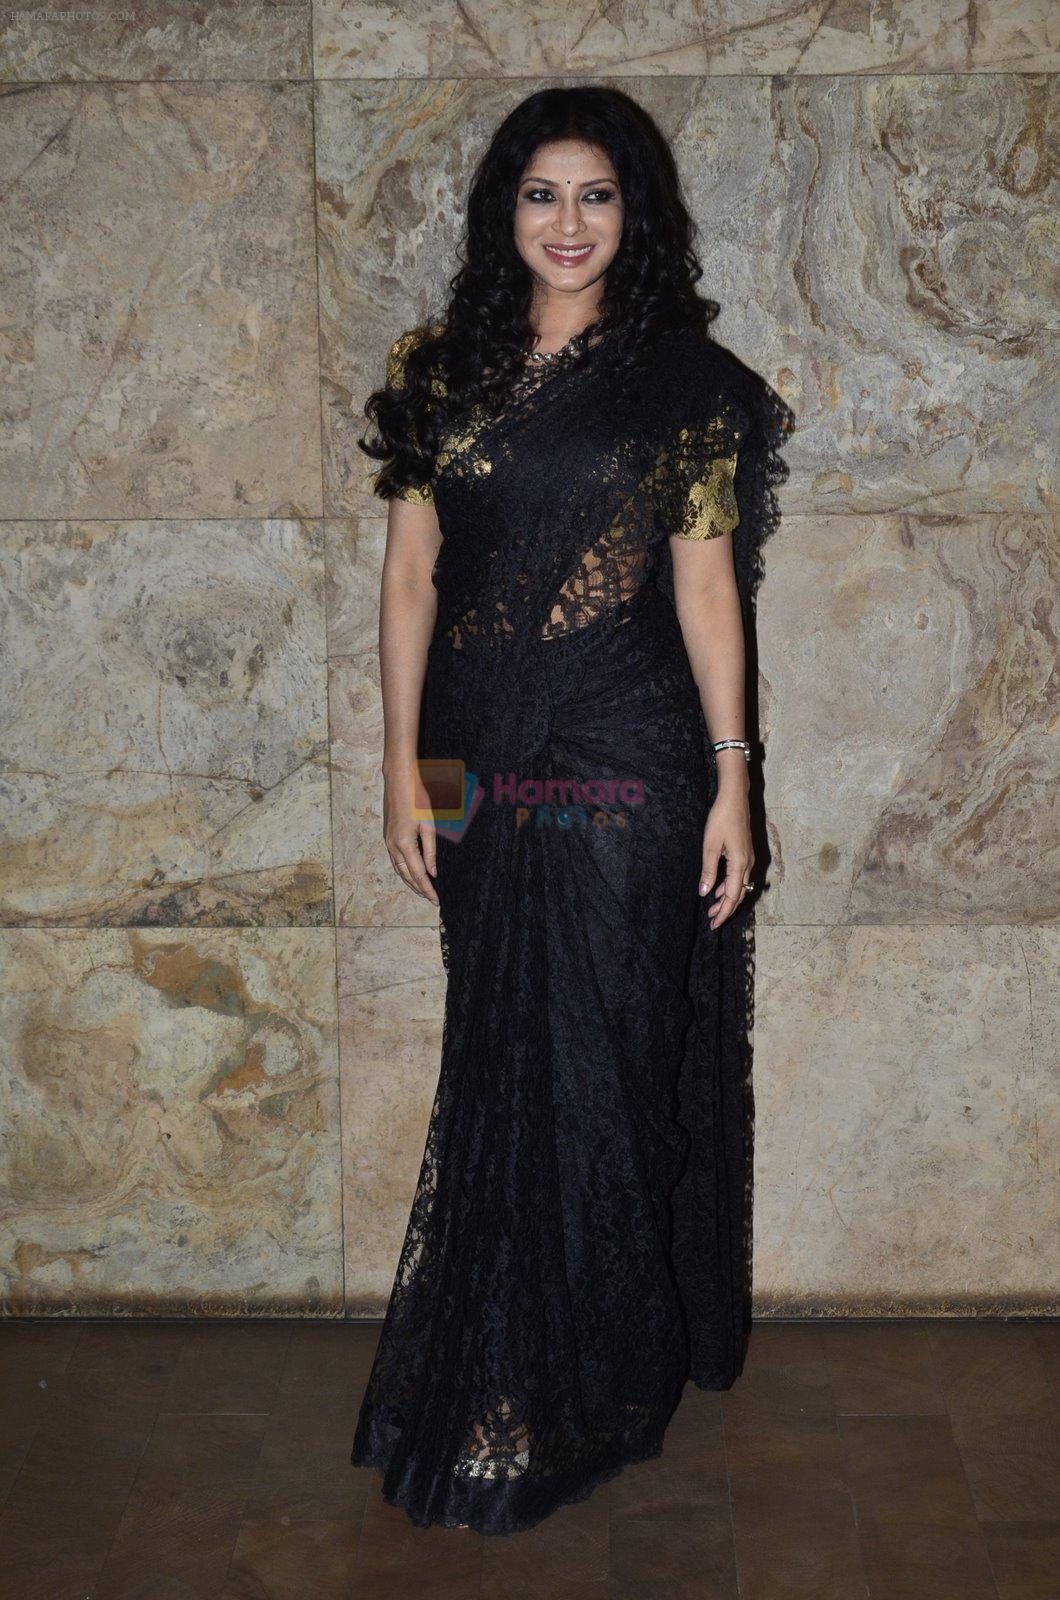 Nandana Sen at the Screening of the film Rang Rasiya in Lightbox on 5th Nov 2014